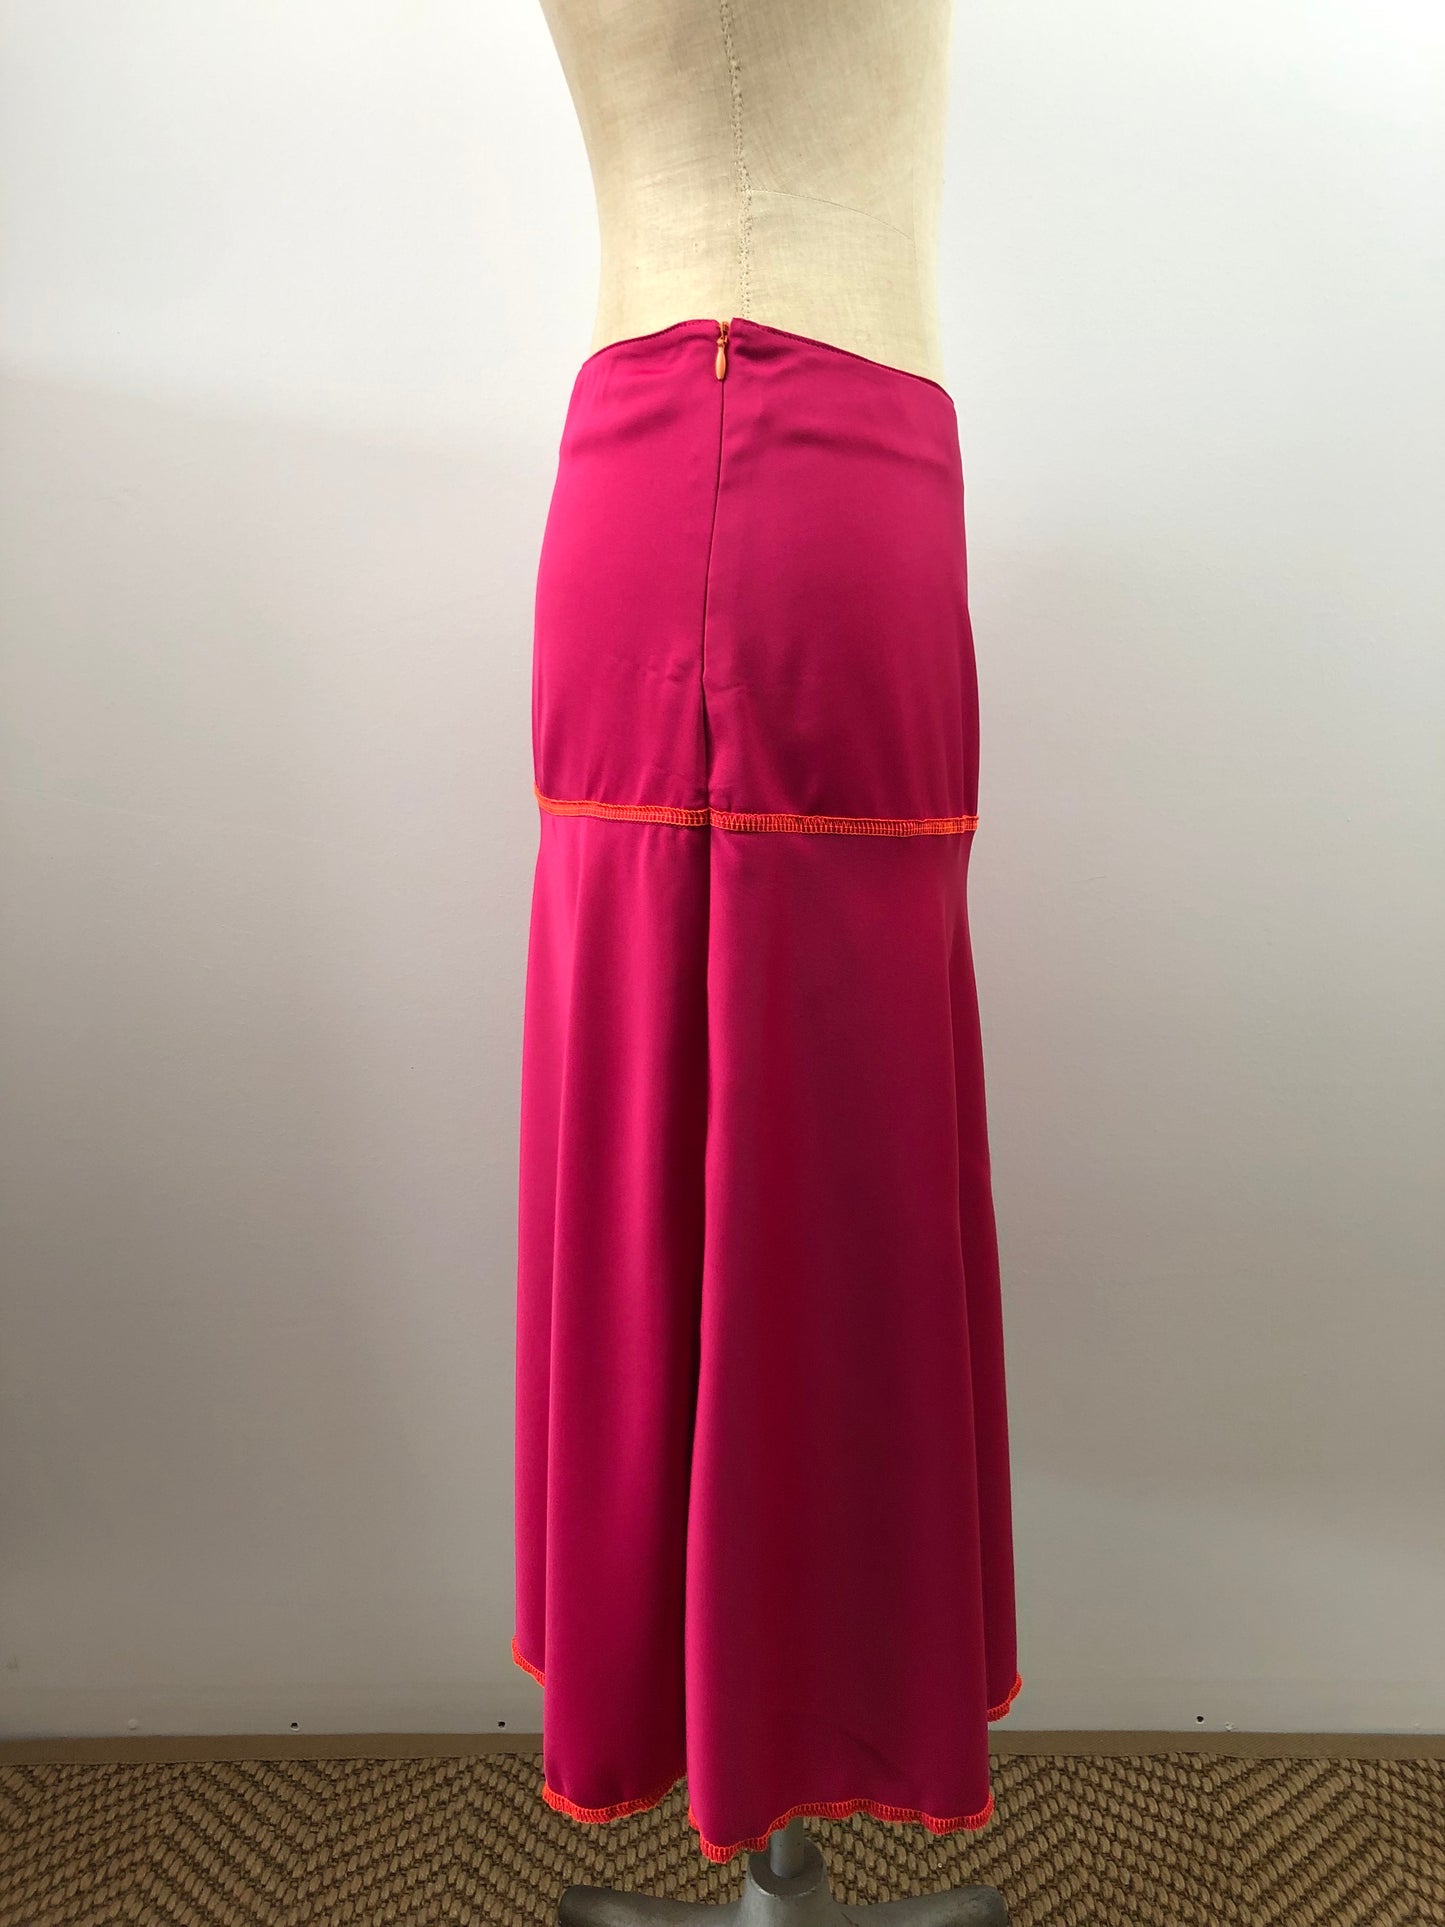 Satin handmade summer skirt